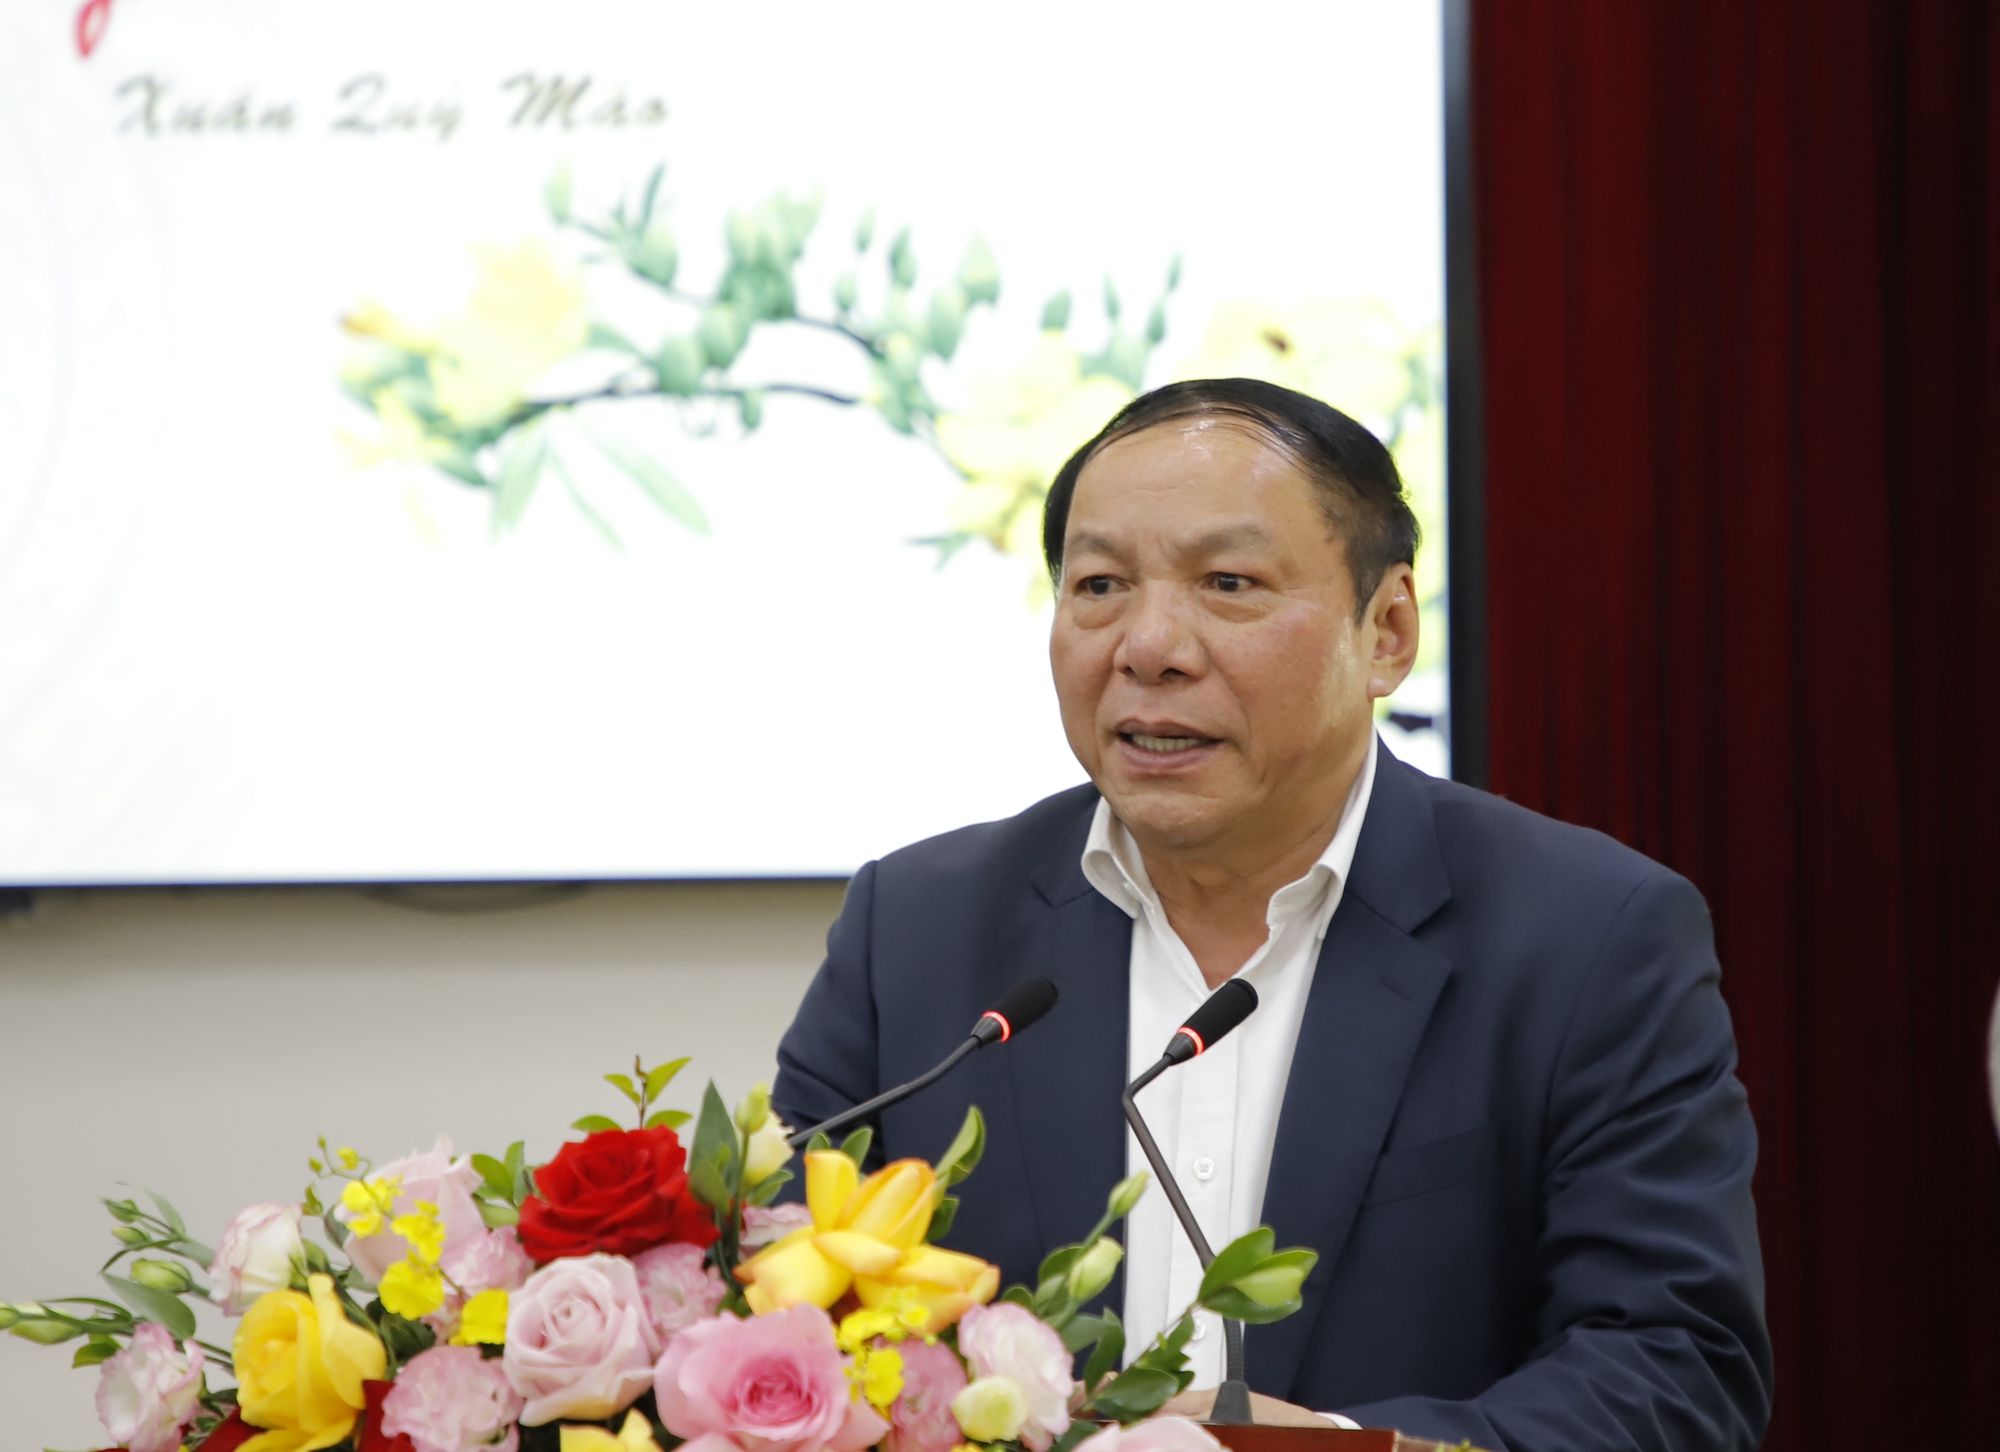 Bộ trưởng Nguyễn Văn Hùng: Kế thừa mạch nguồn truyền thống, kinh nghiệm lãnh đạo của các thế hệ đi trước để vị thế ngành VHTTDL ngày càng tốt hơn